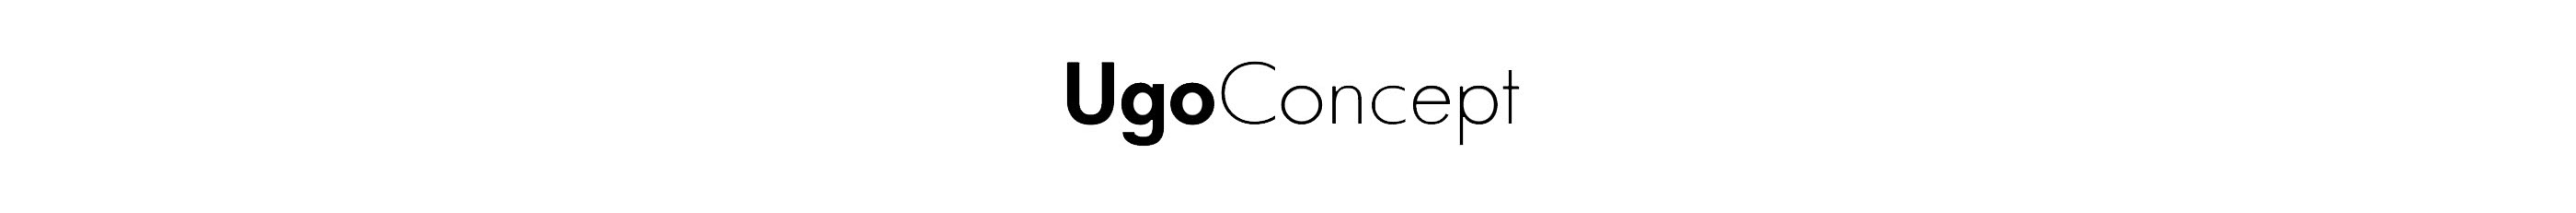 Ugo - Concept's profile banner